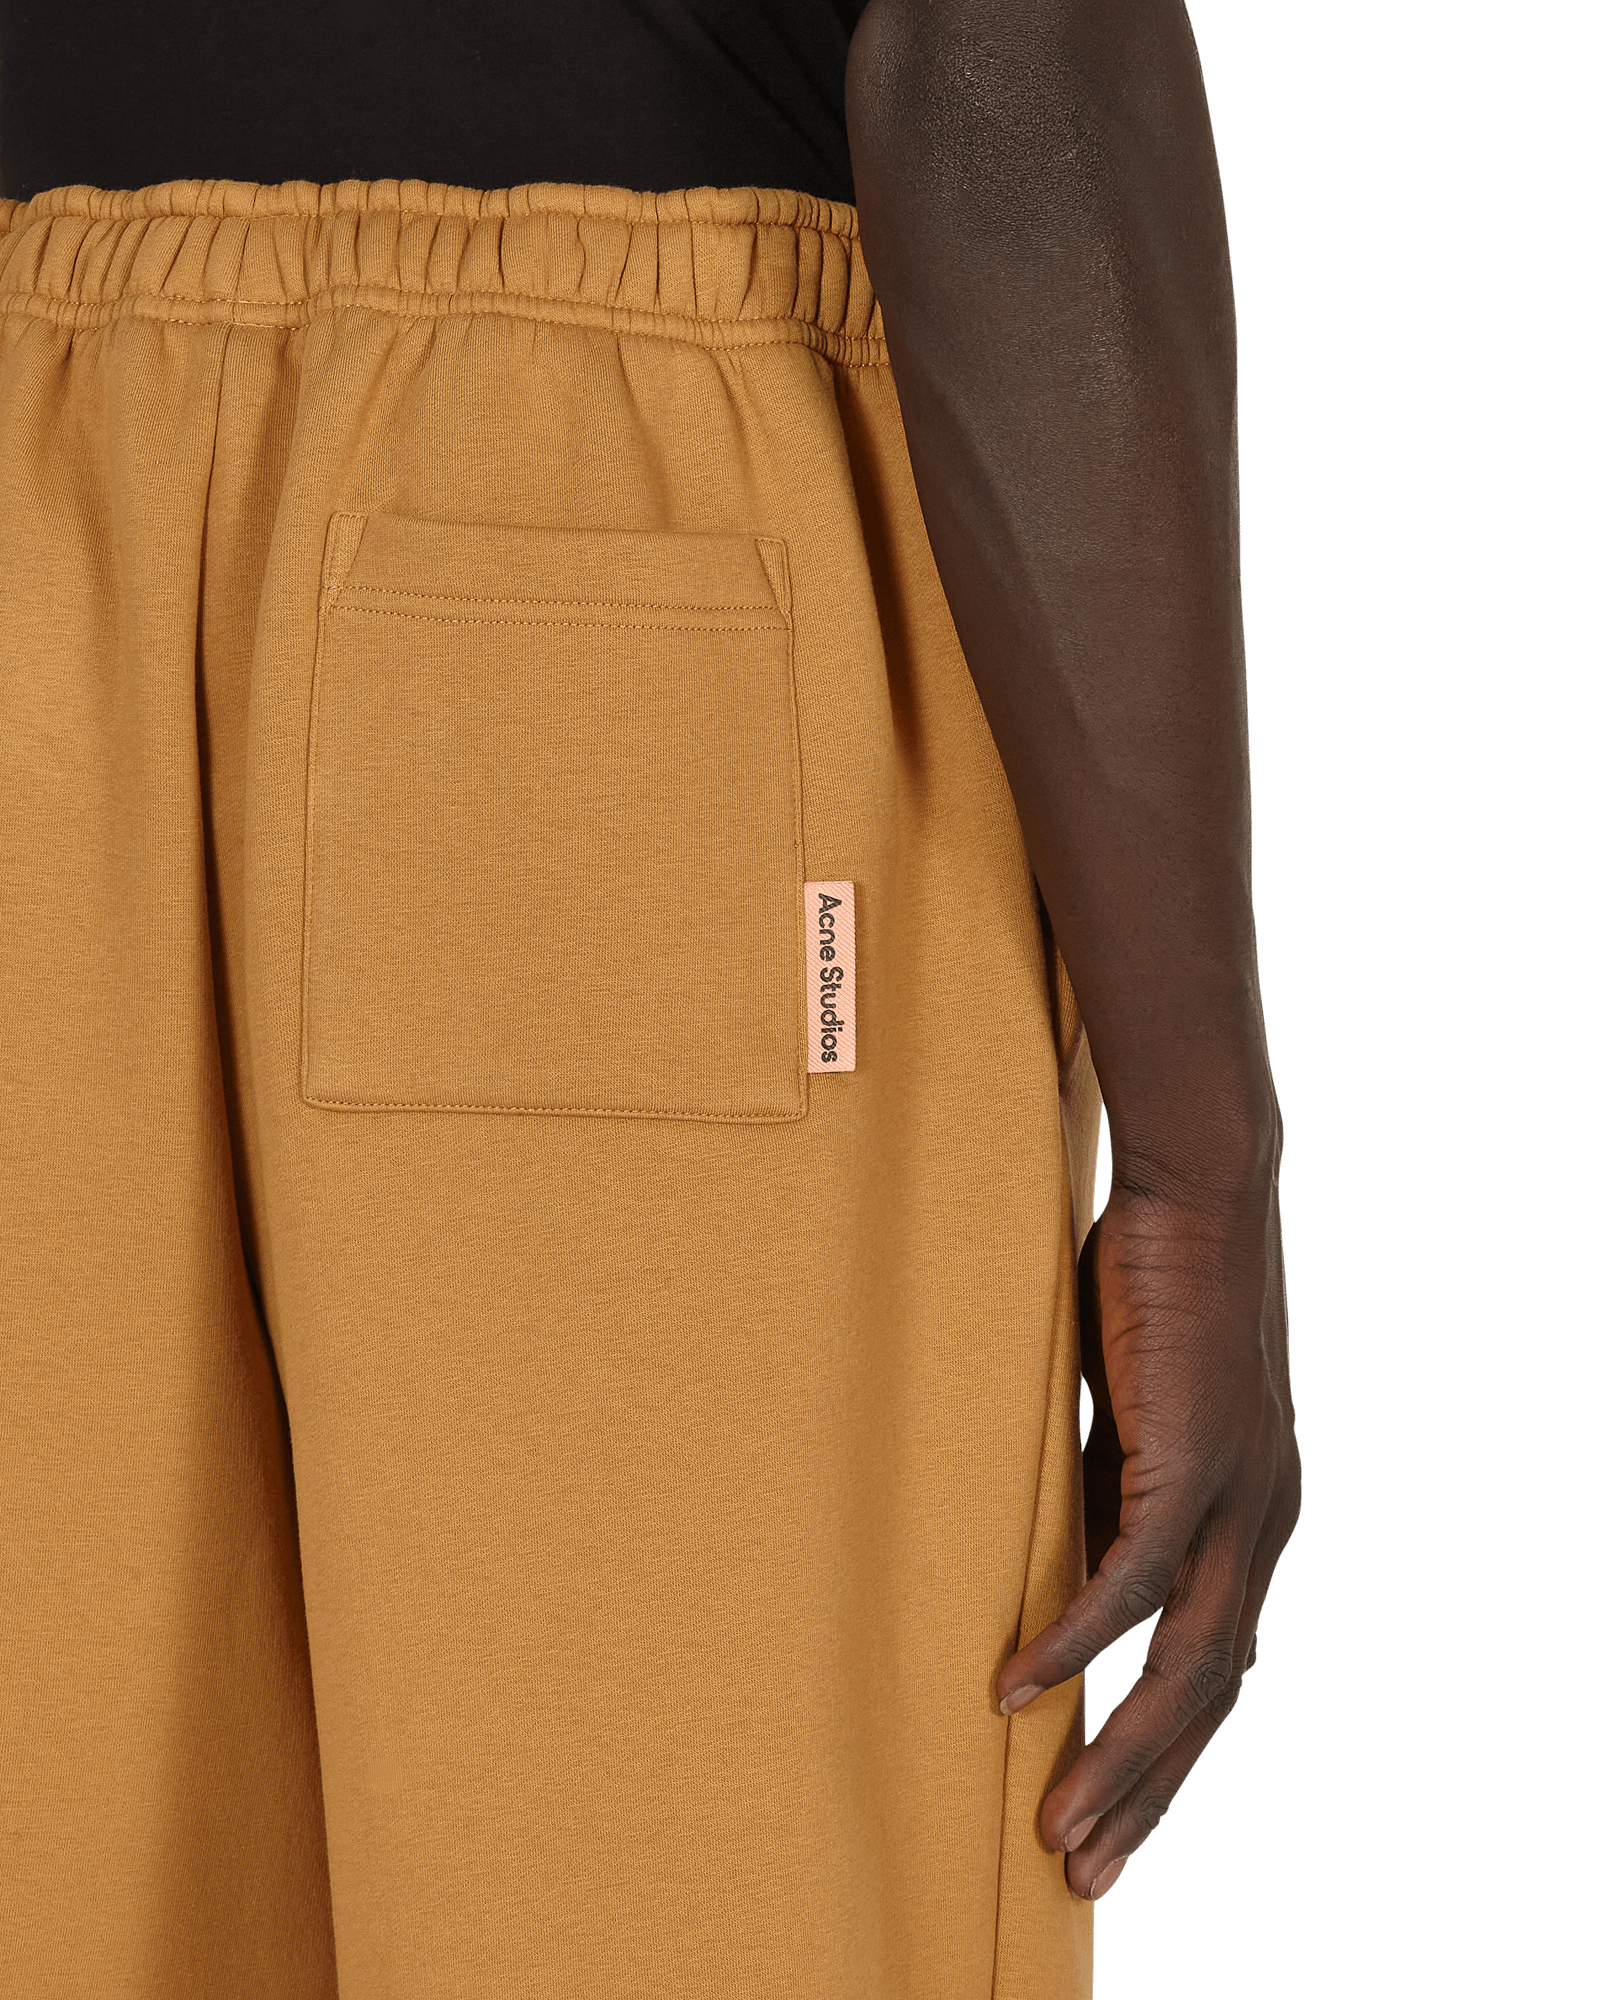 Acne Studios Trouser Caramel Brown Pants Sweatpants BK0416- 59C